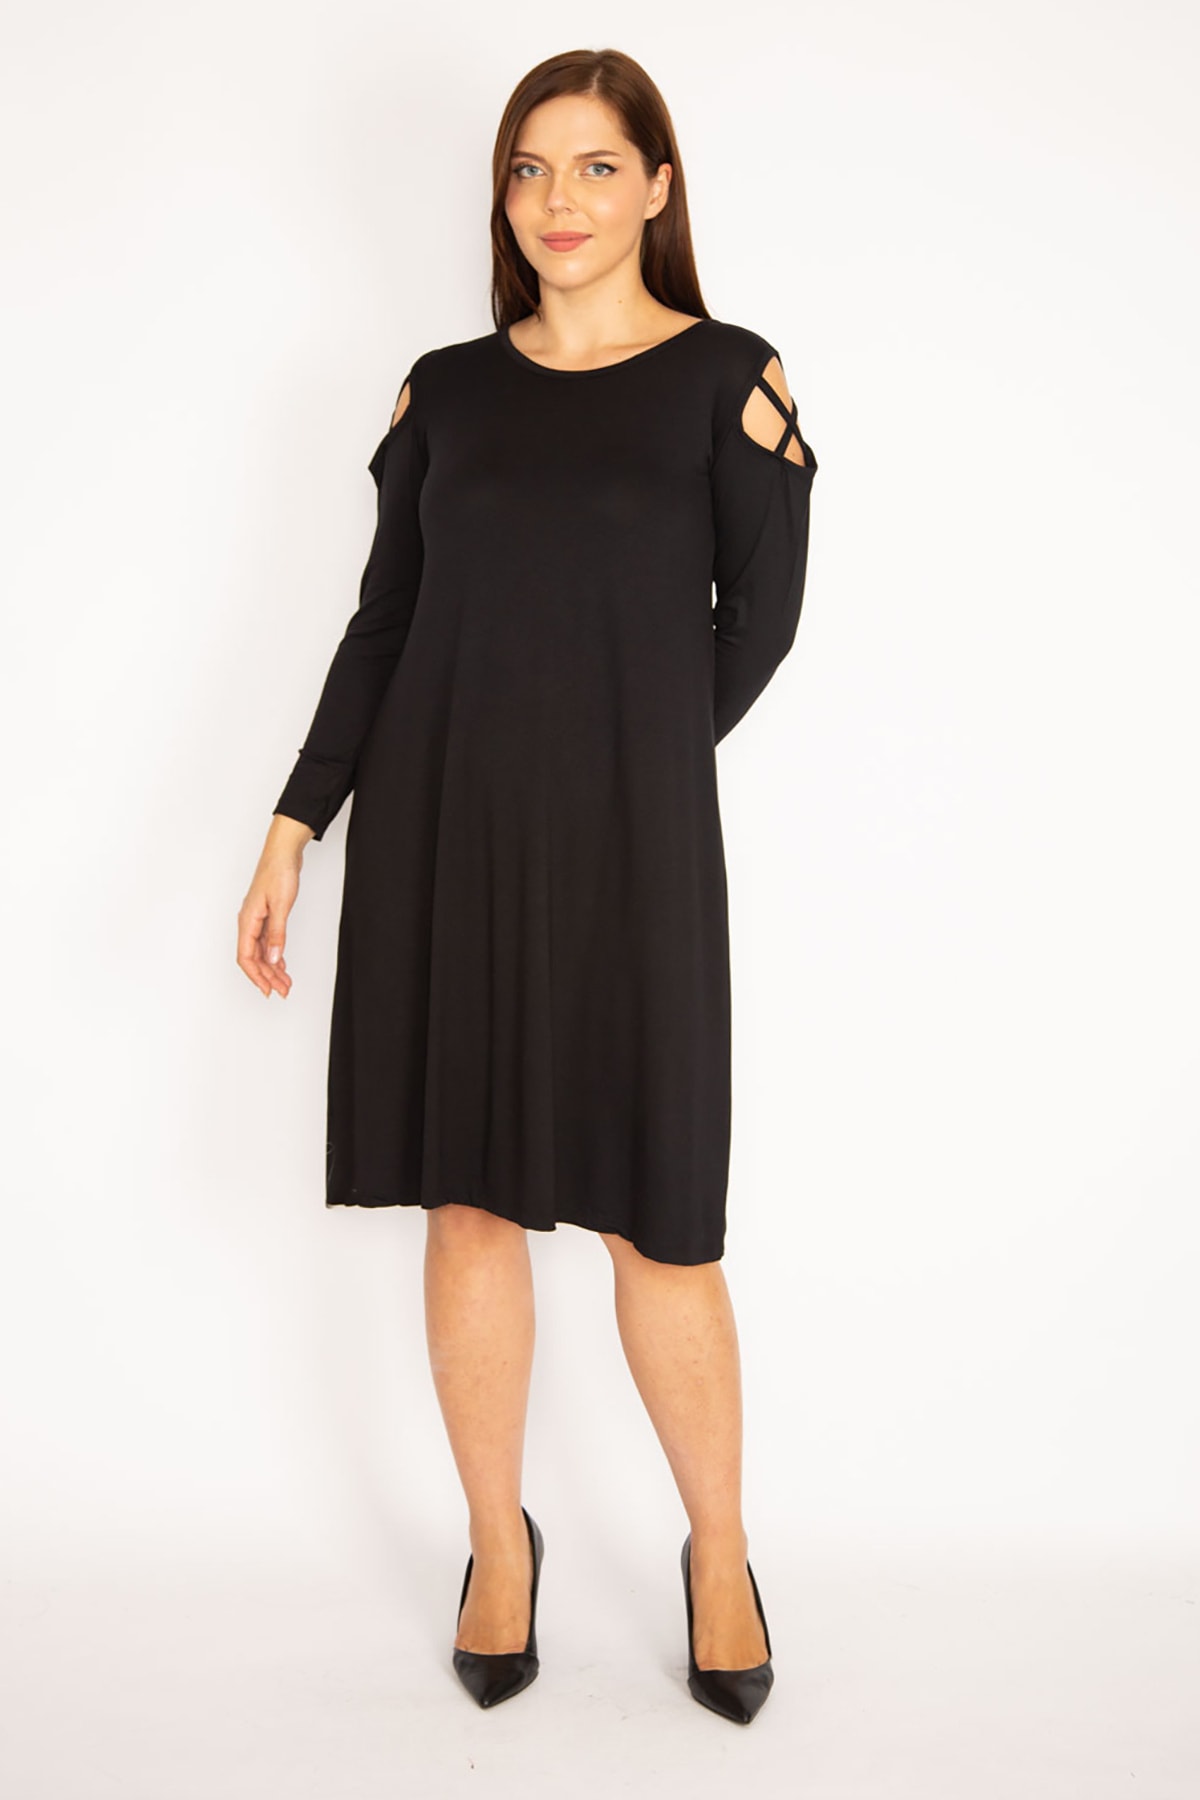 Levně Şans Women's Plus Size Black Dress with Shoulder Detail